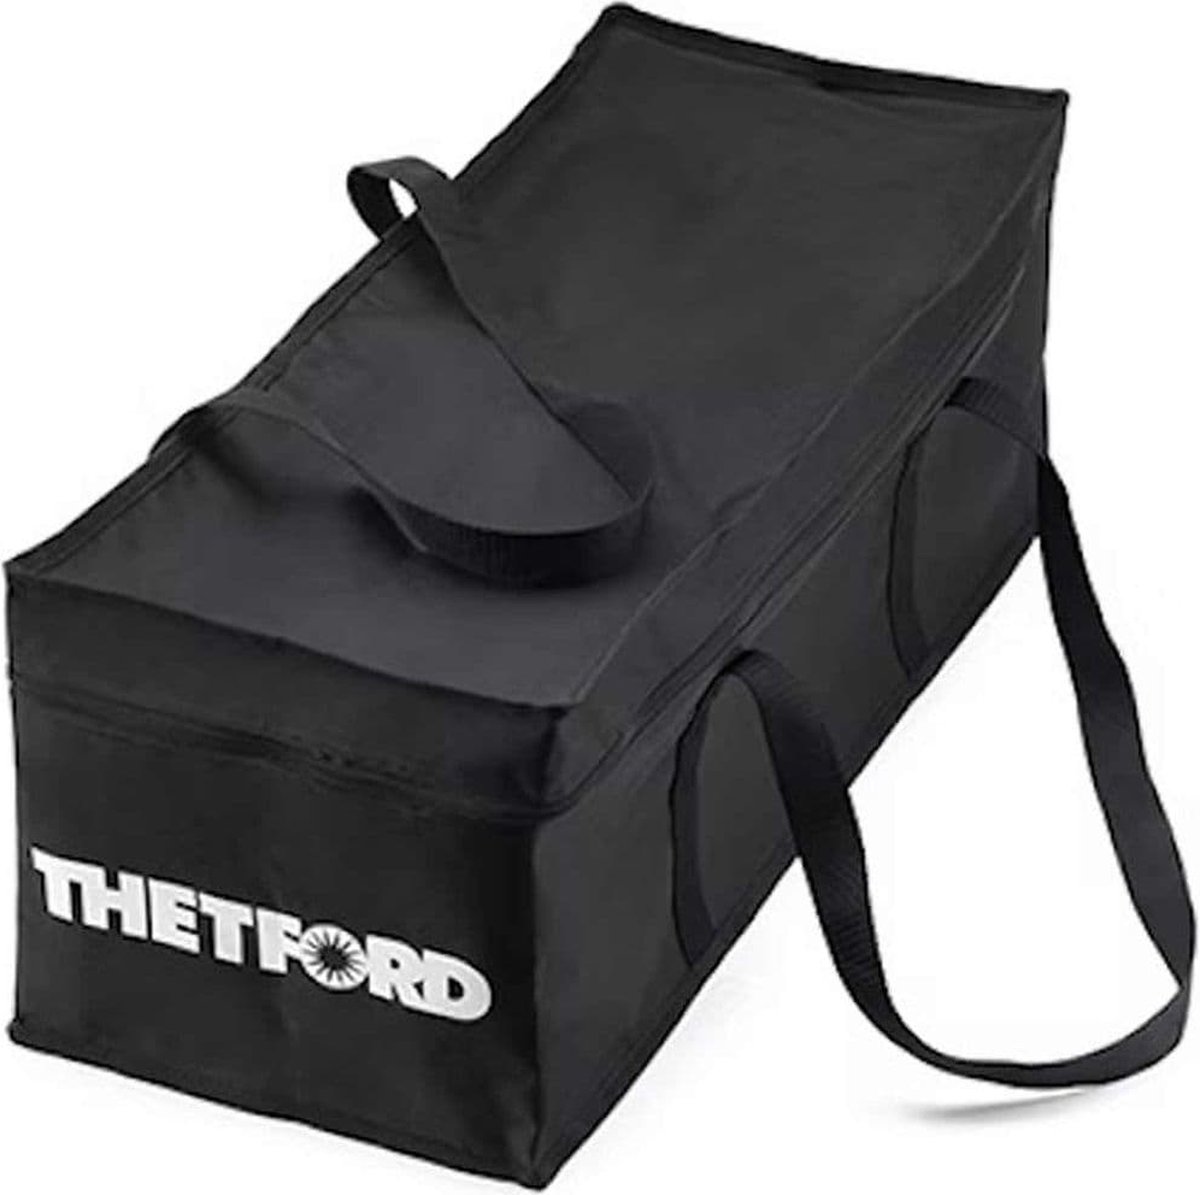 Thetford Cassette Carry Bag - Big